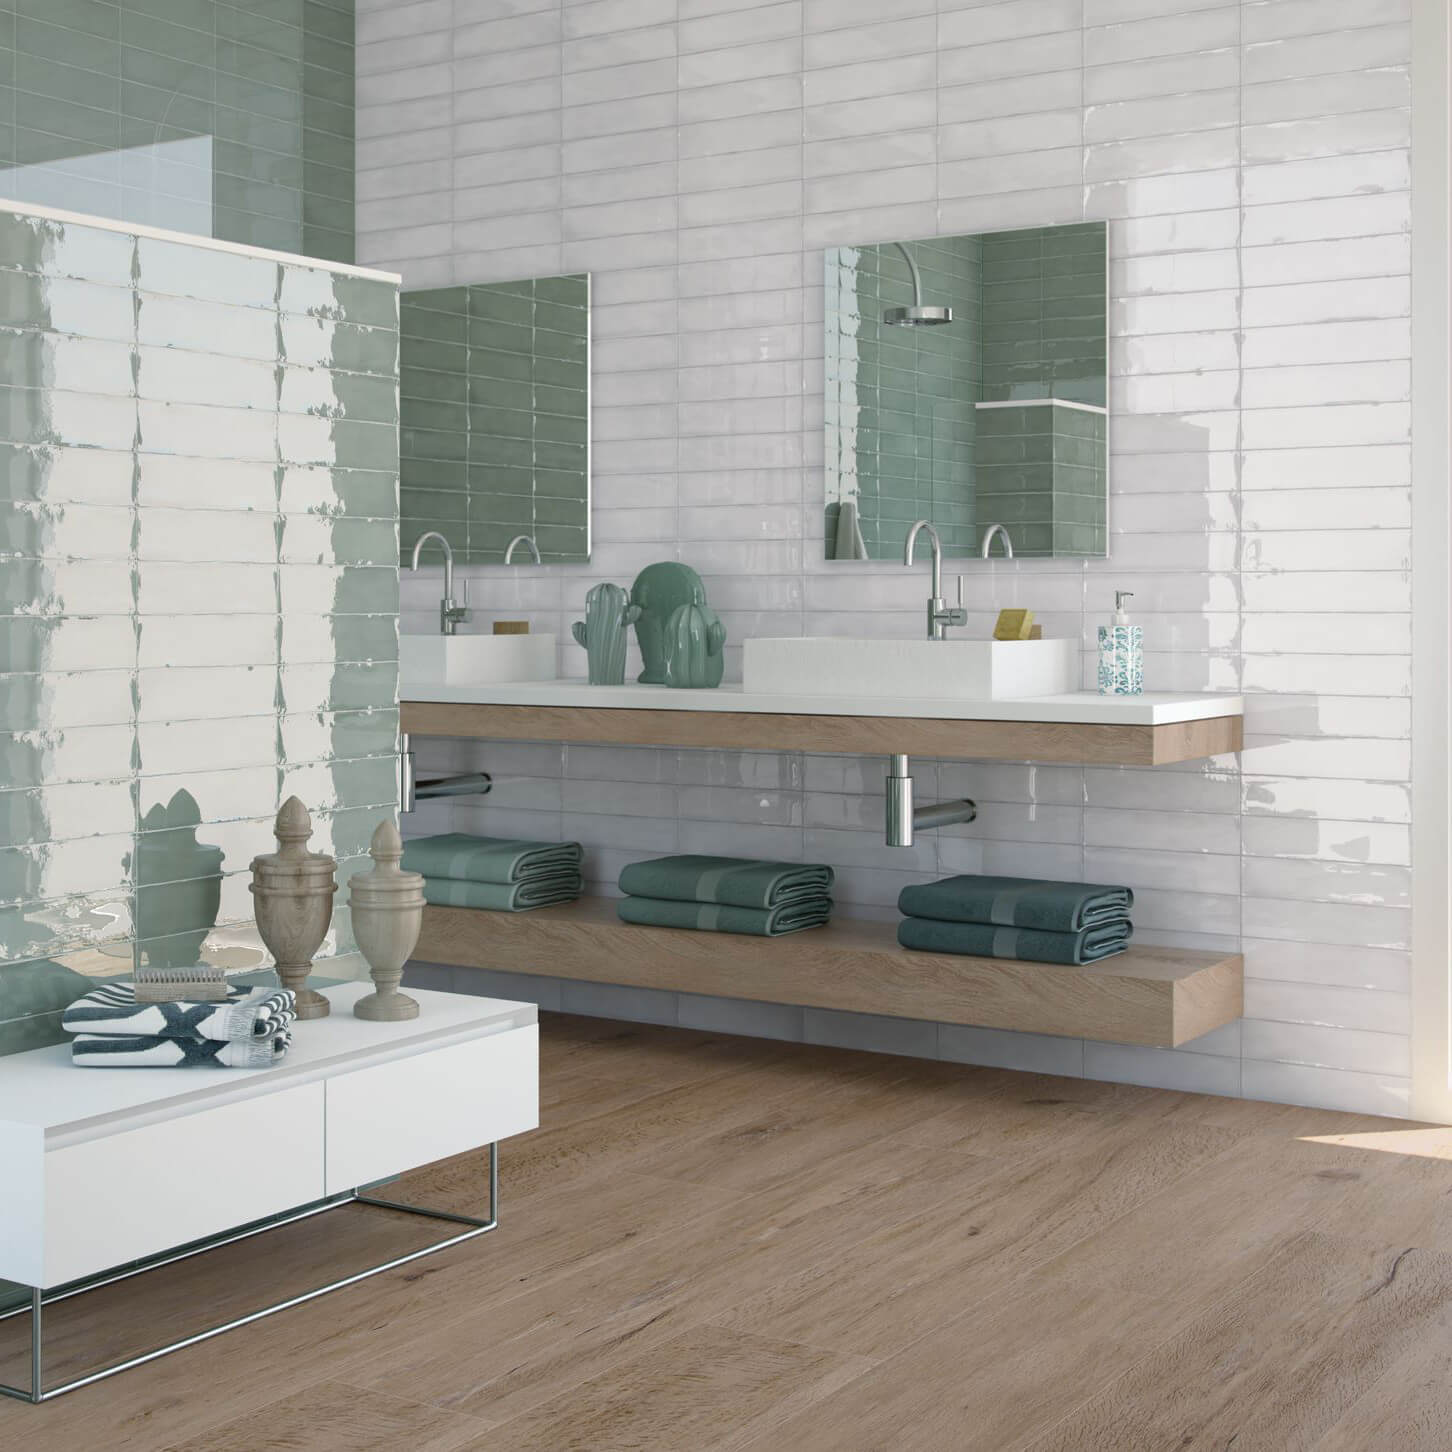 Carrelage sol ou la cuisine salle de bain Carré Mosaïque en verre blanc uni 4 mm neuf # 183 